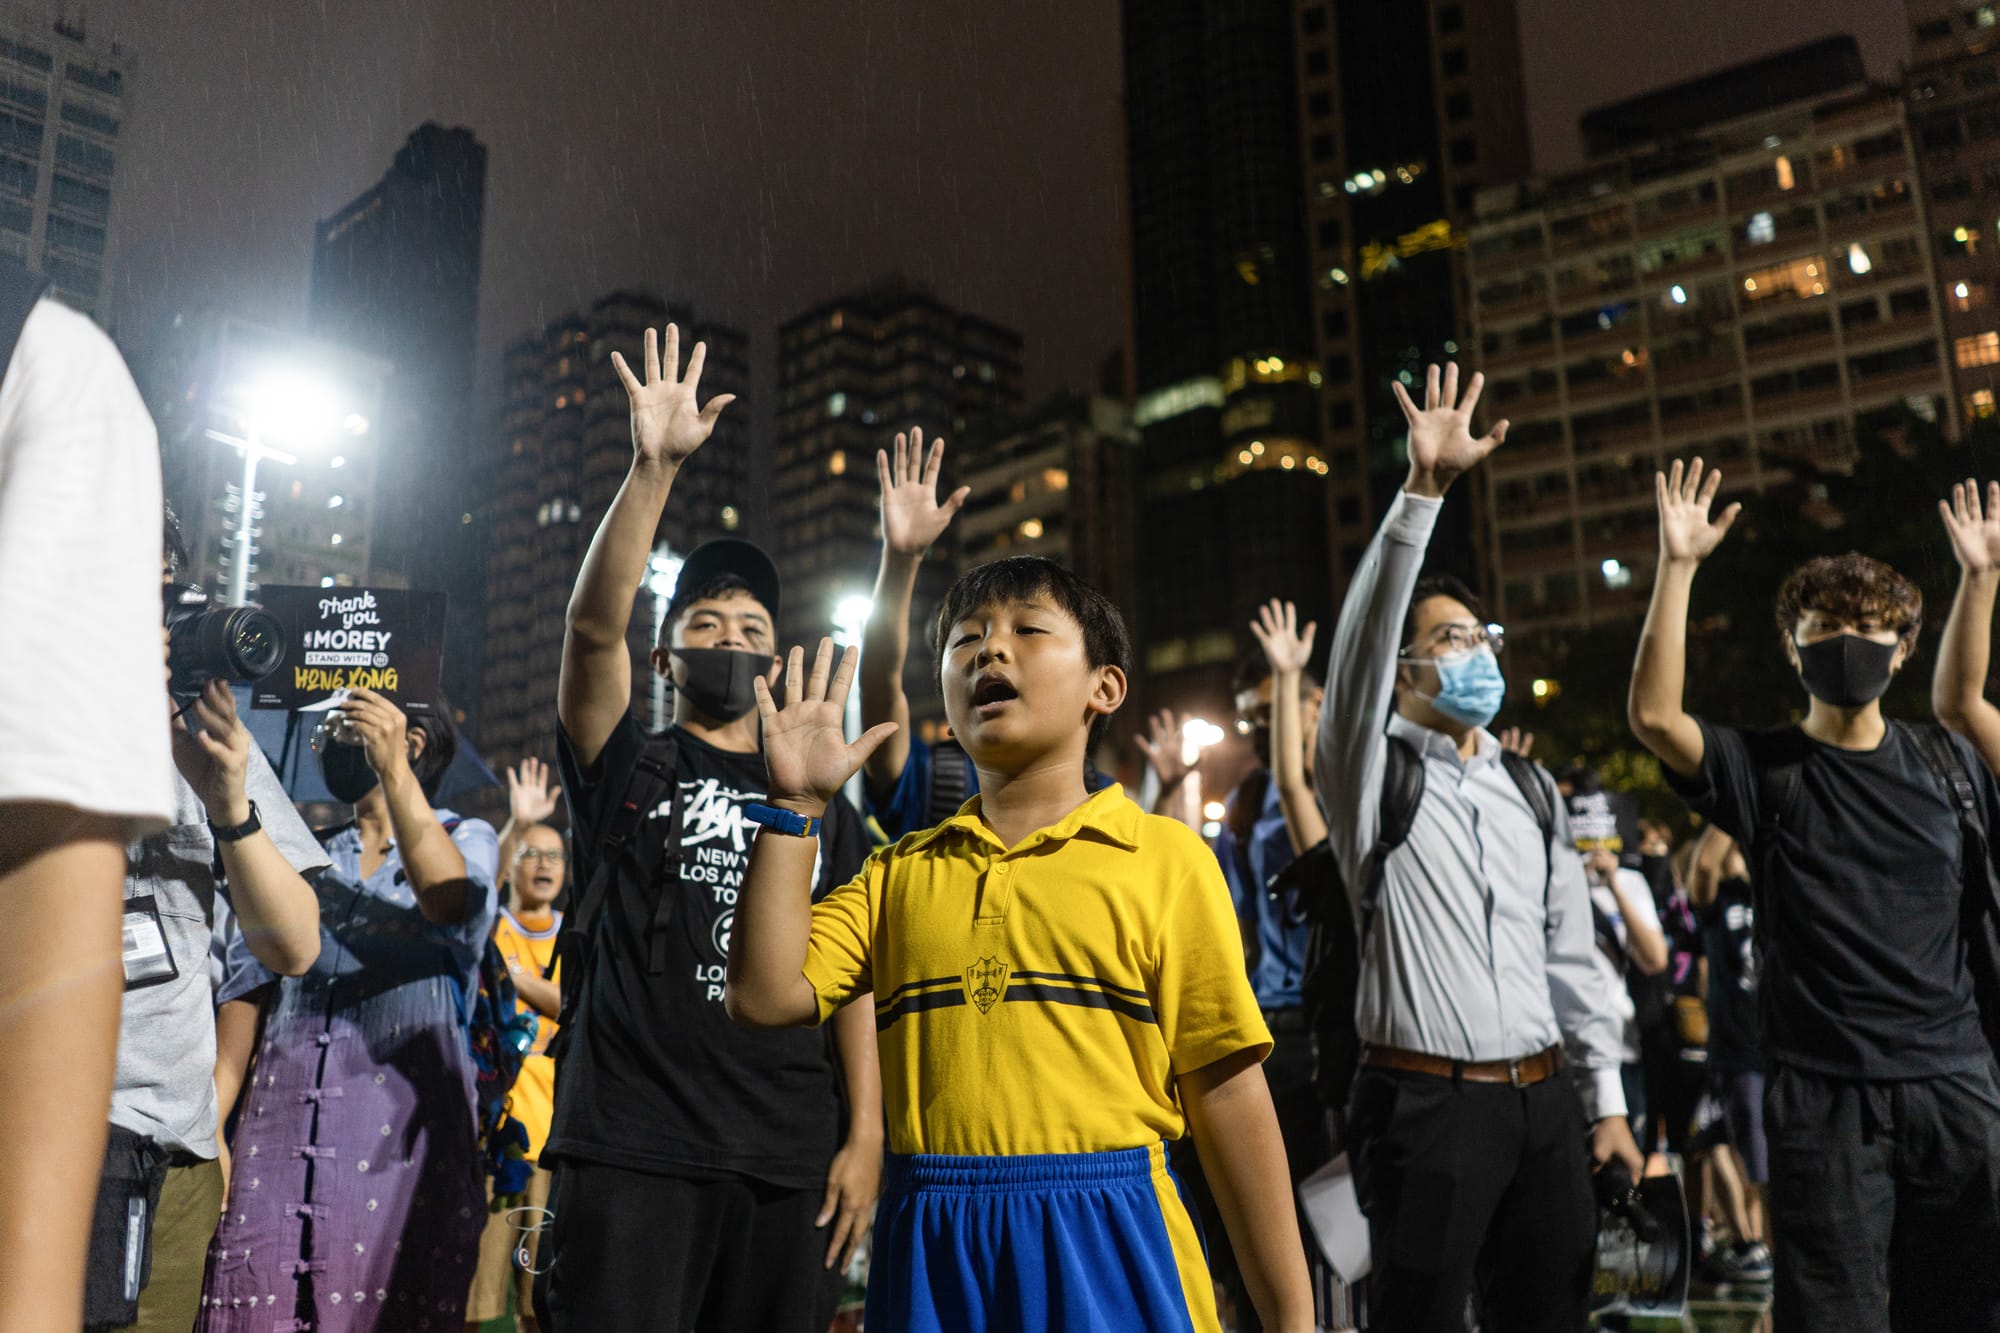 hong kong protester child singing glory hong kong anthem raised hands